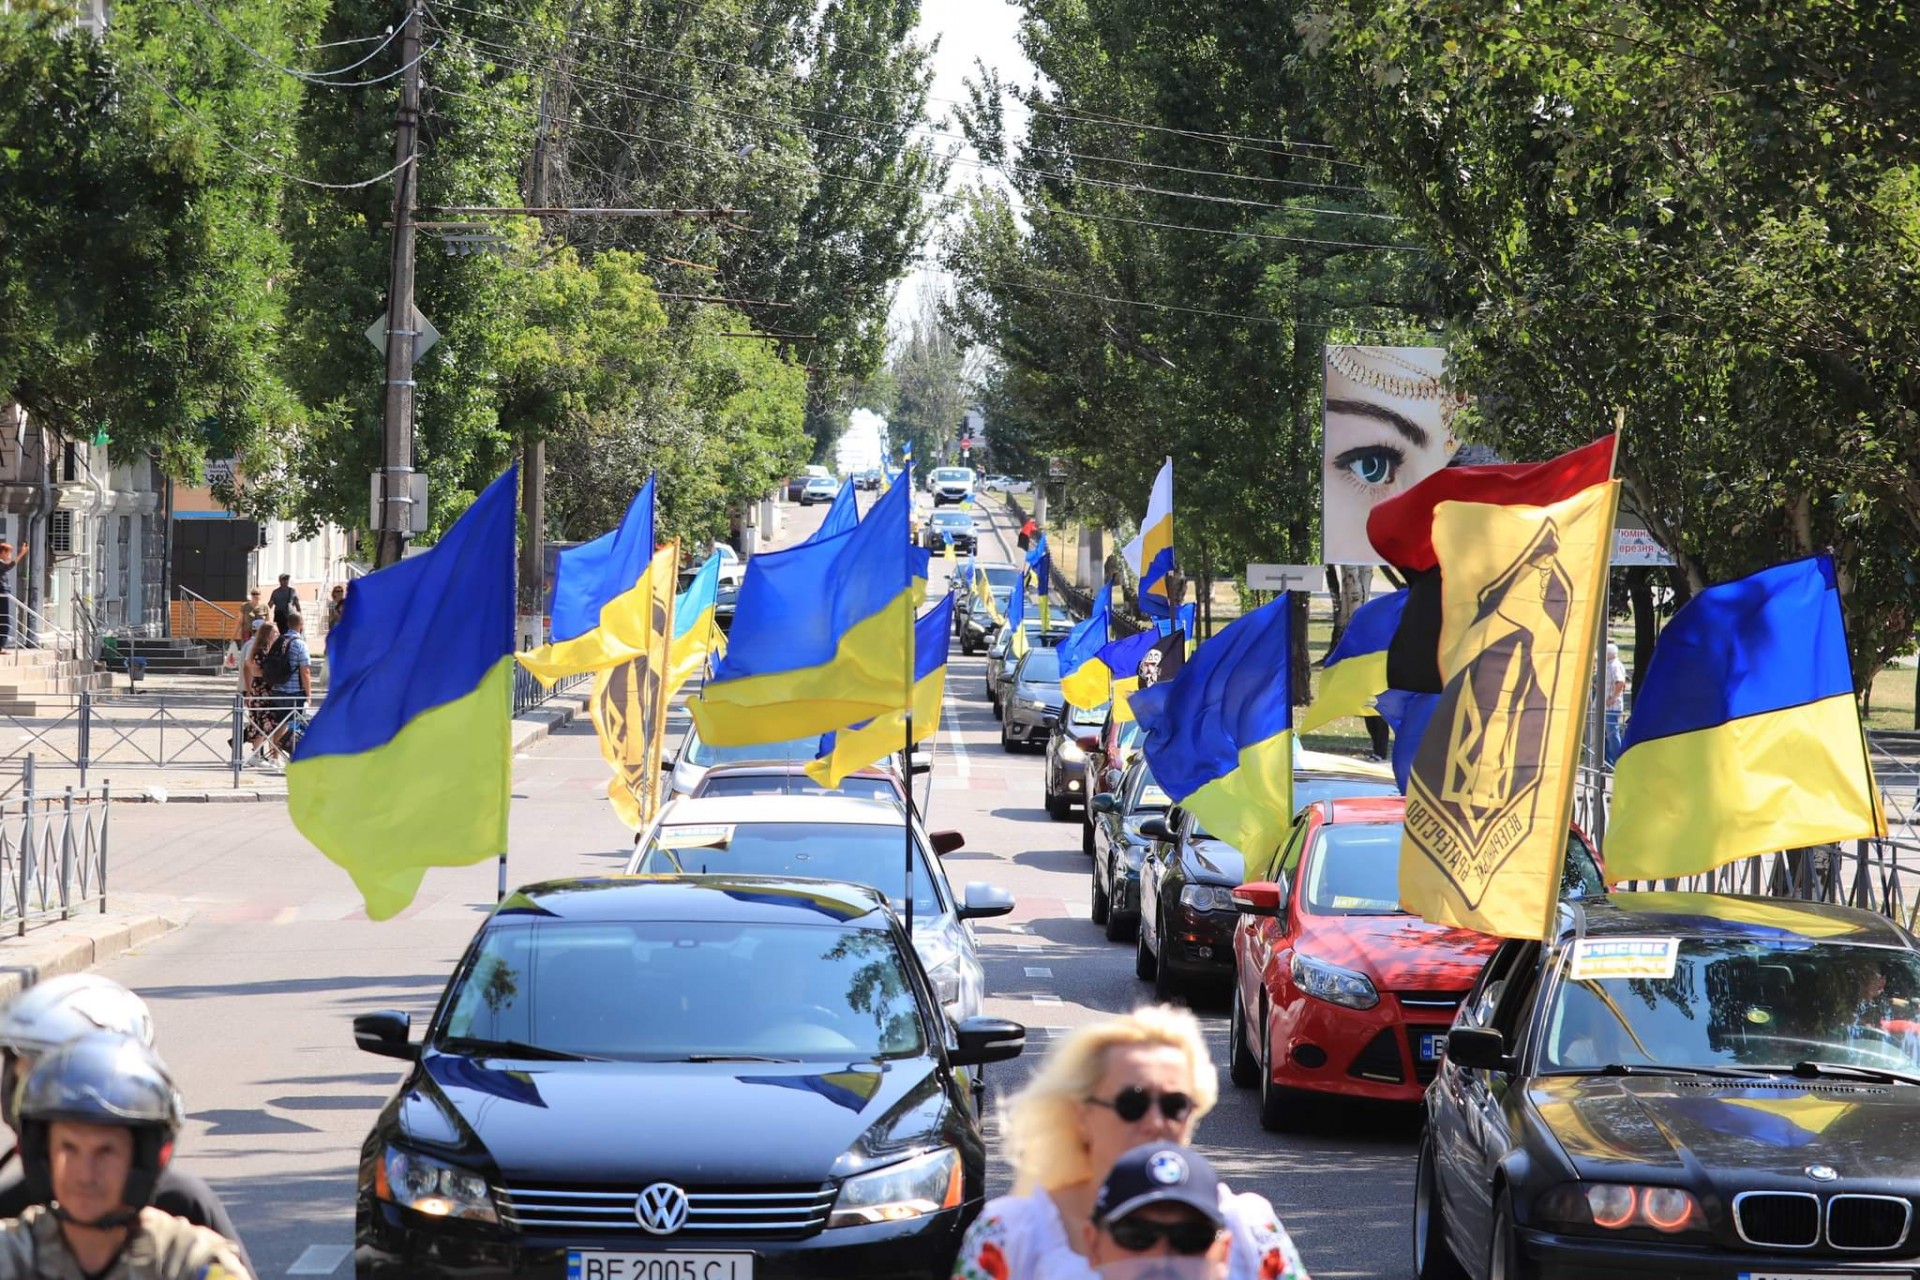 Uzmanību zibakcija! Auto Brīvības brauciens ar Ukrainas karogiem gar Krievijas vēstniecību. Aicināti visi! (Bilde 3)